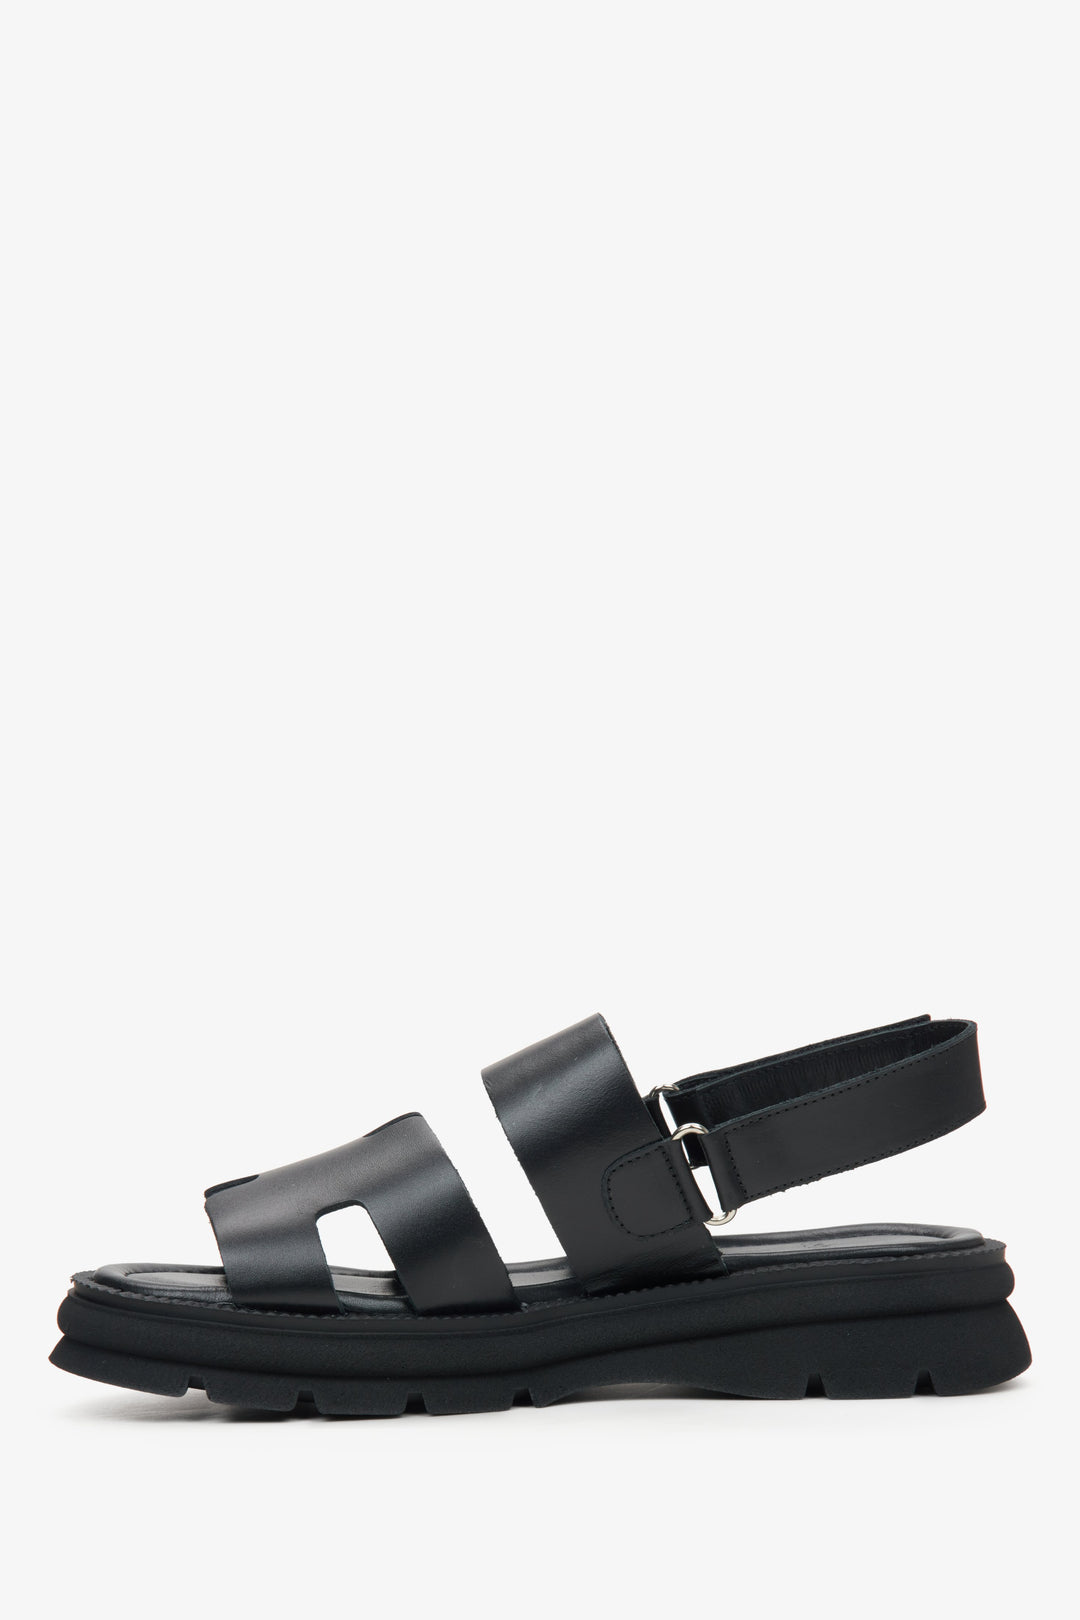 Czarne damskie sandały ze skóry naturalnej Estro - profil buta.